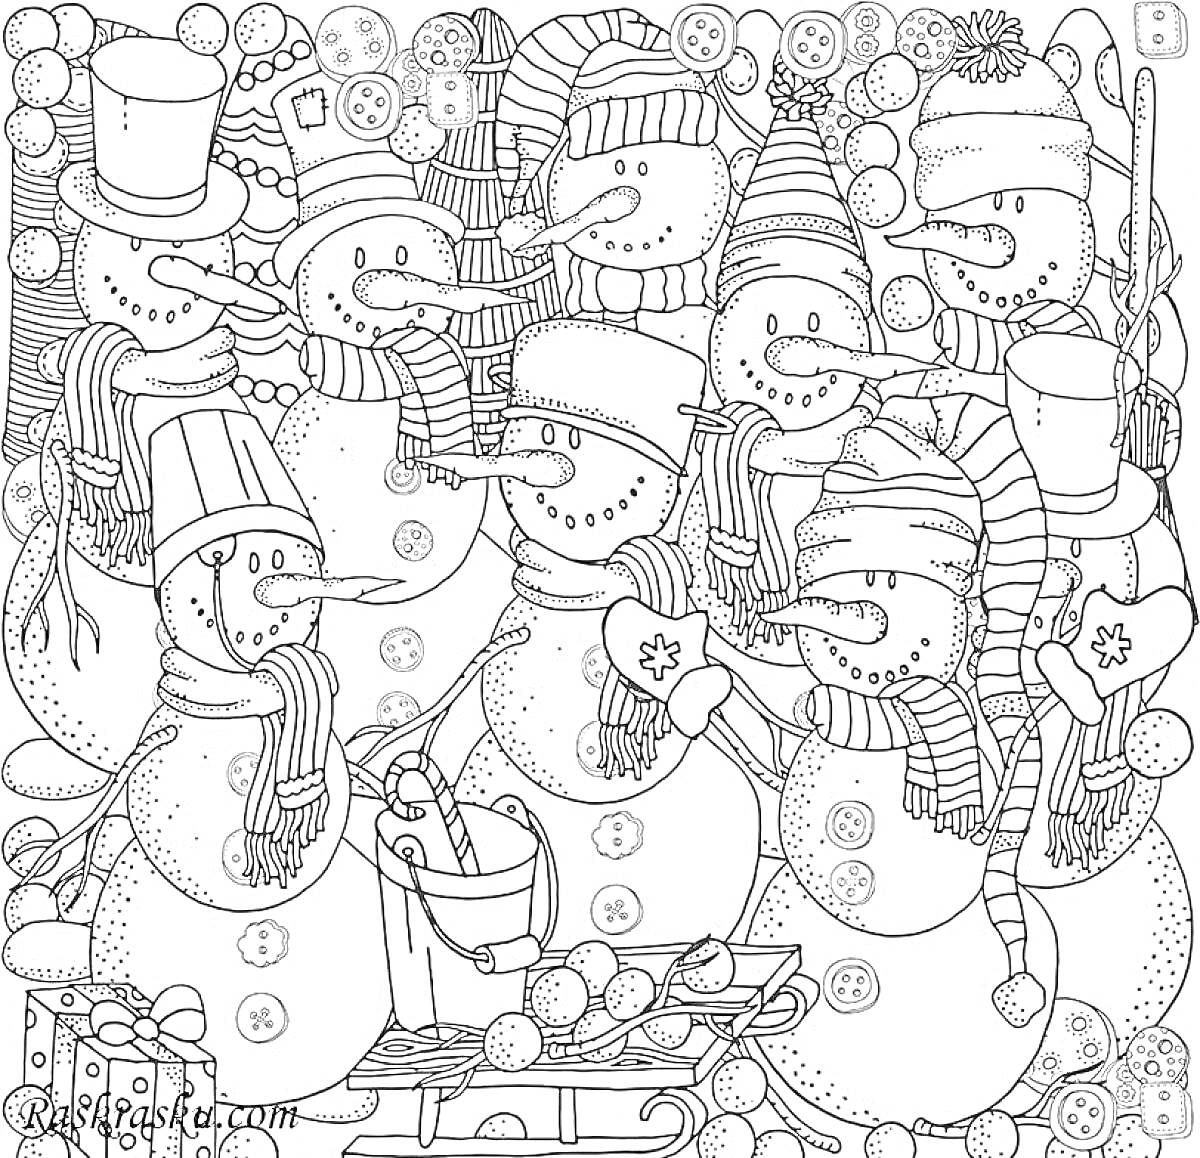 Раскраска Снежные человечки с ведром и санками, в шапках и шарфах, на фоне снега и снежков, кнопок и снежинок